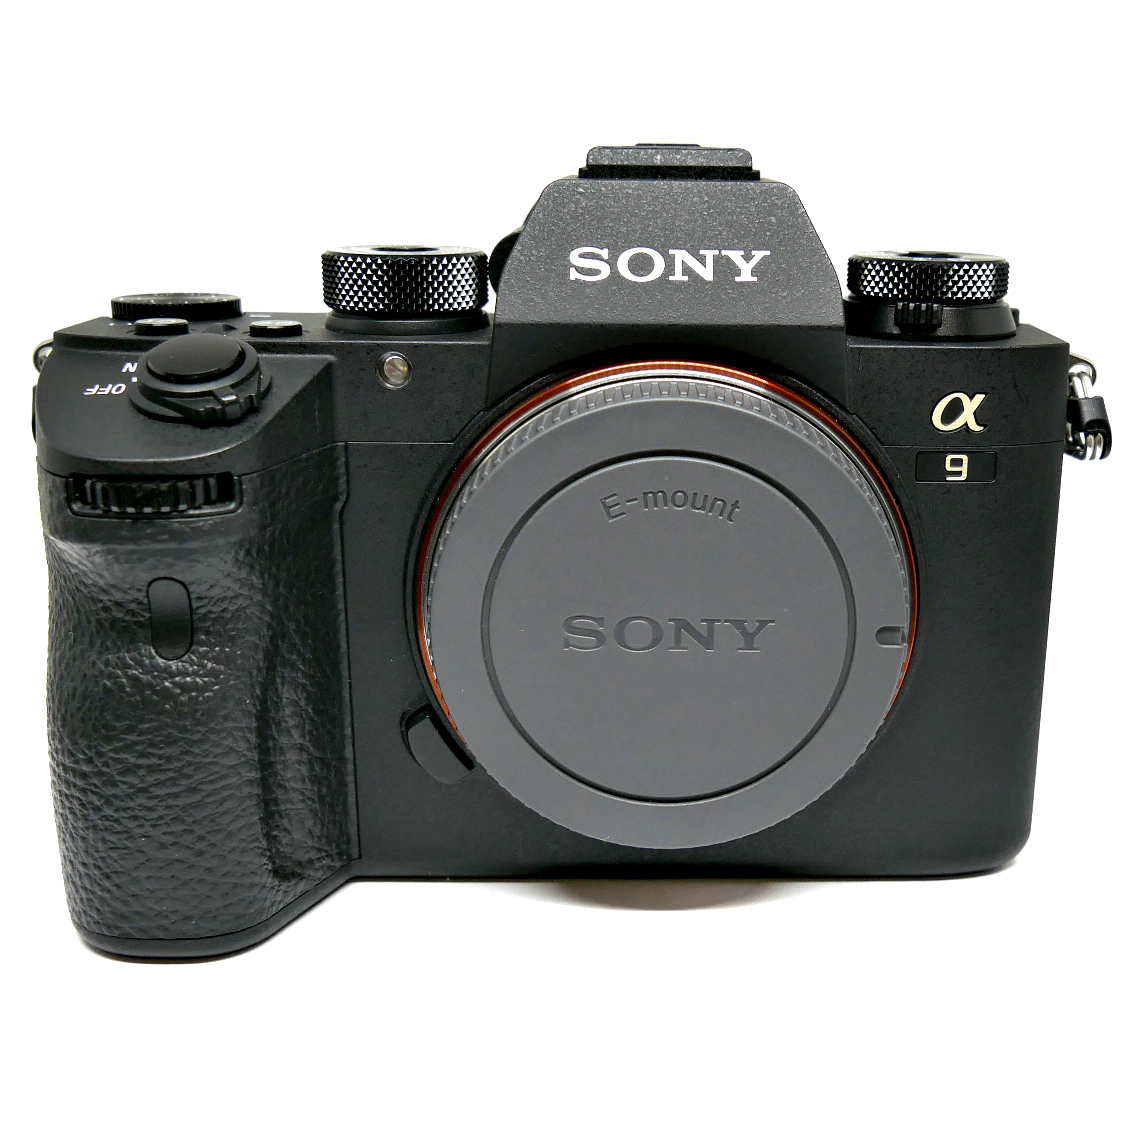 (Myyty) Sony A9 -runko (SC:1370) 5 vuoden täysturva voimassa (käytetty) 